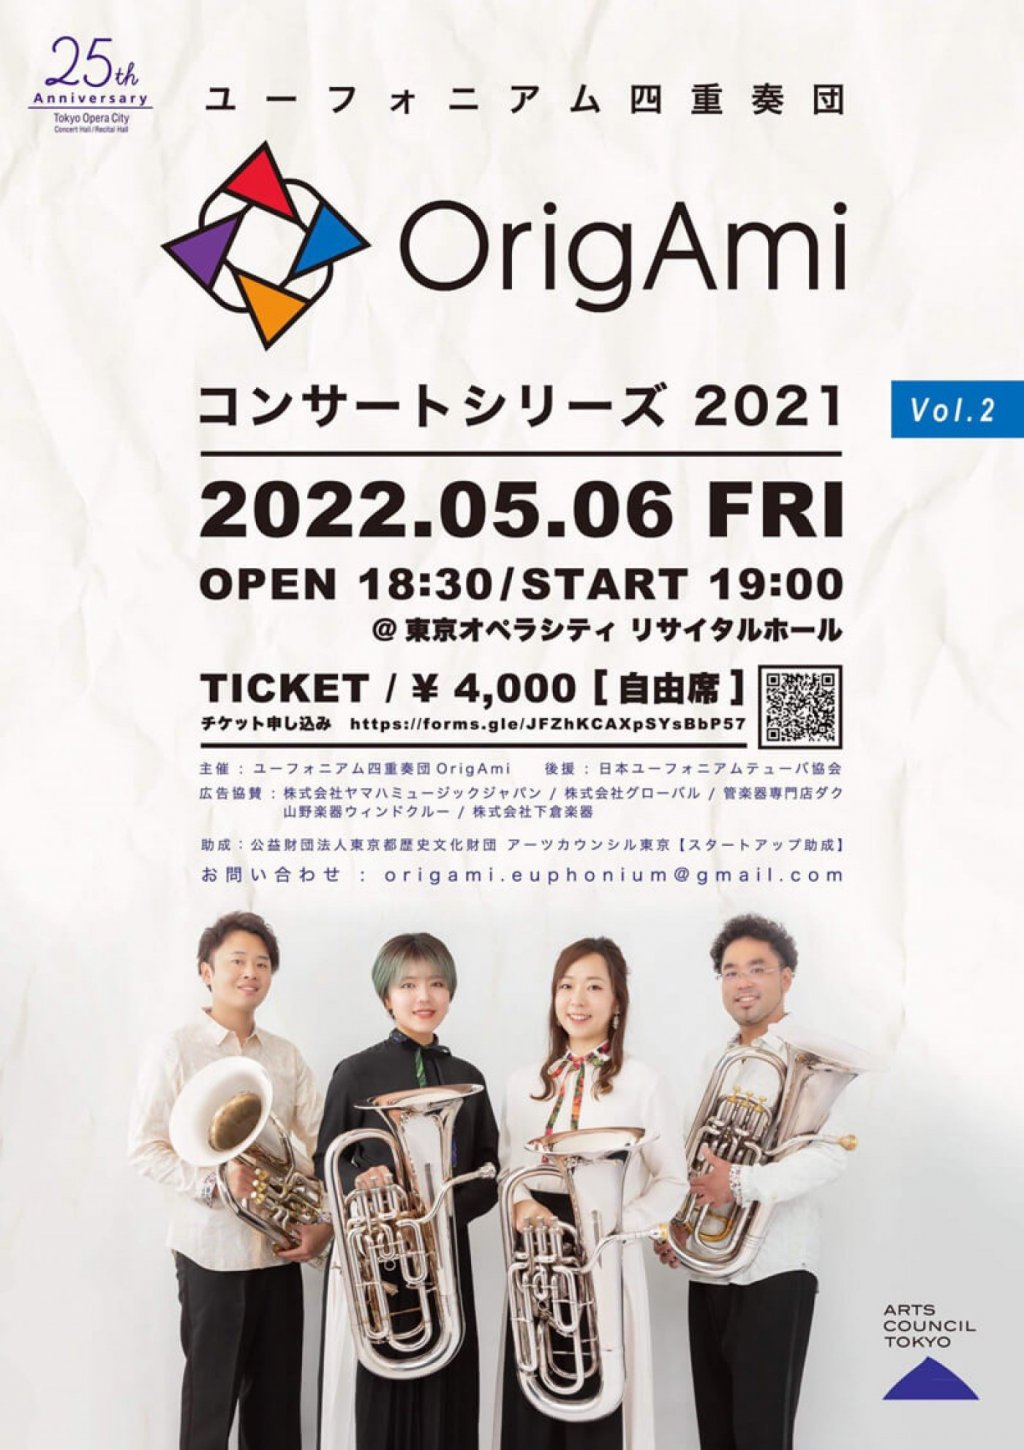 ユーフォニアム四重奏団 OrigAmi コンサートシリーズ 2021 Vol.2